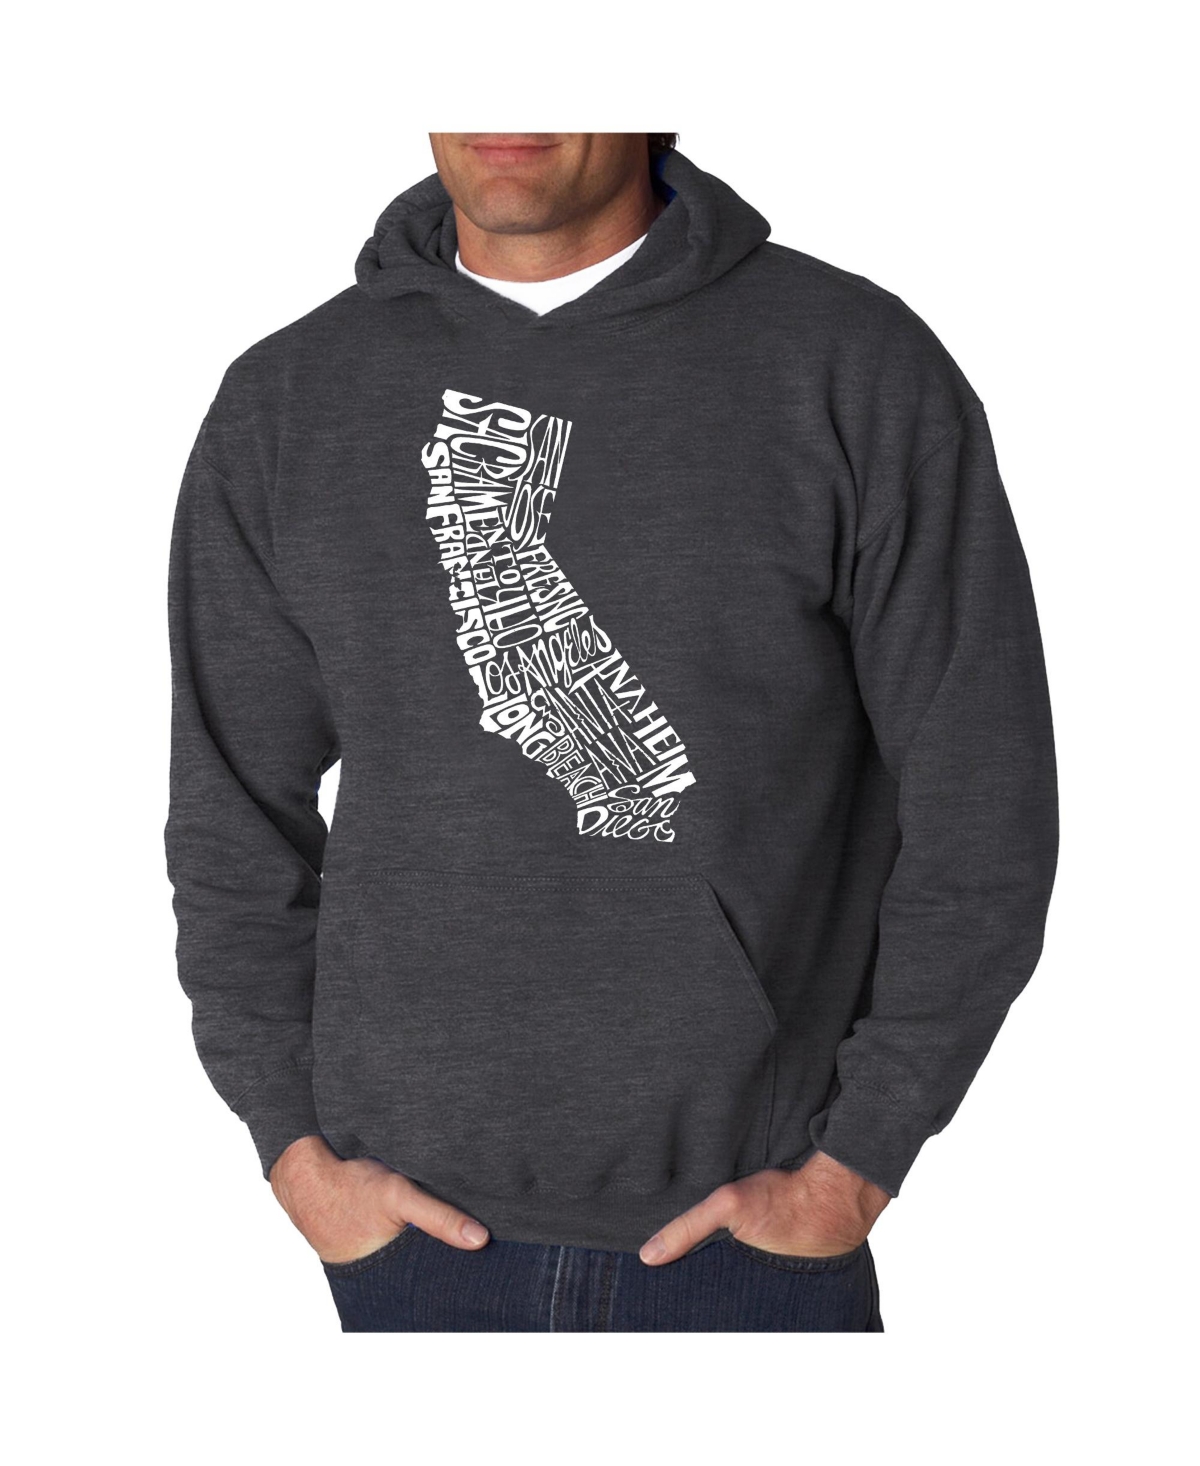 Men's Word Art Hooded Sweatshirt - California State - Dark Gray